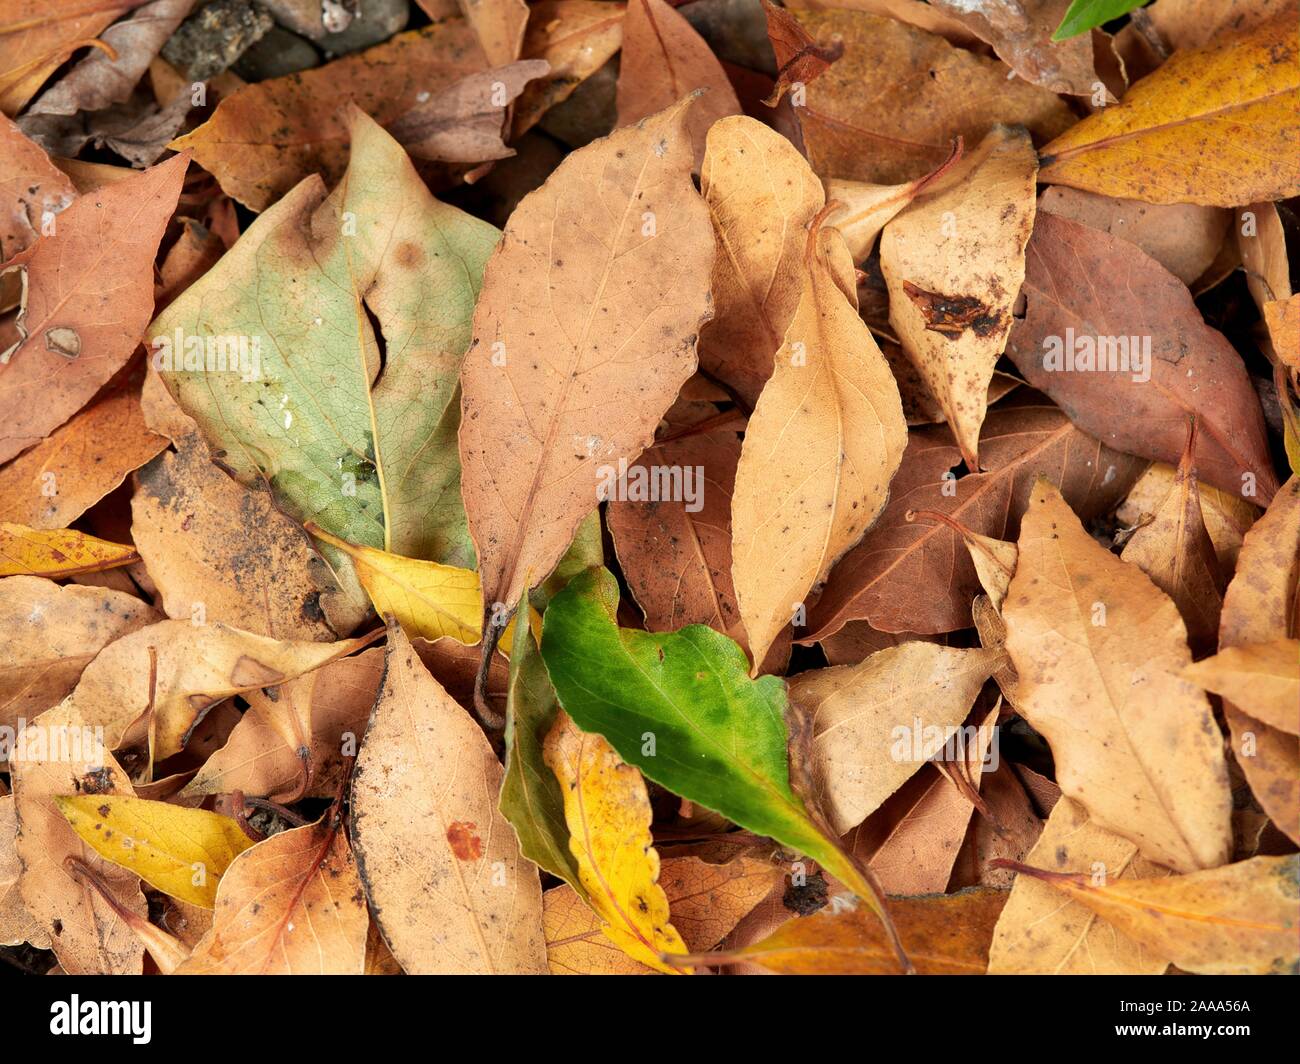 Laurier les feuilles des arbres tombés sur le sol. Vert, olive et brun écorce Banque D'Images